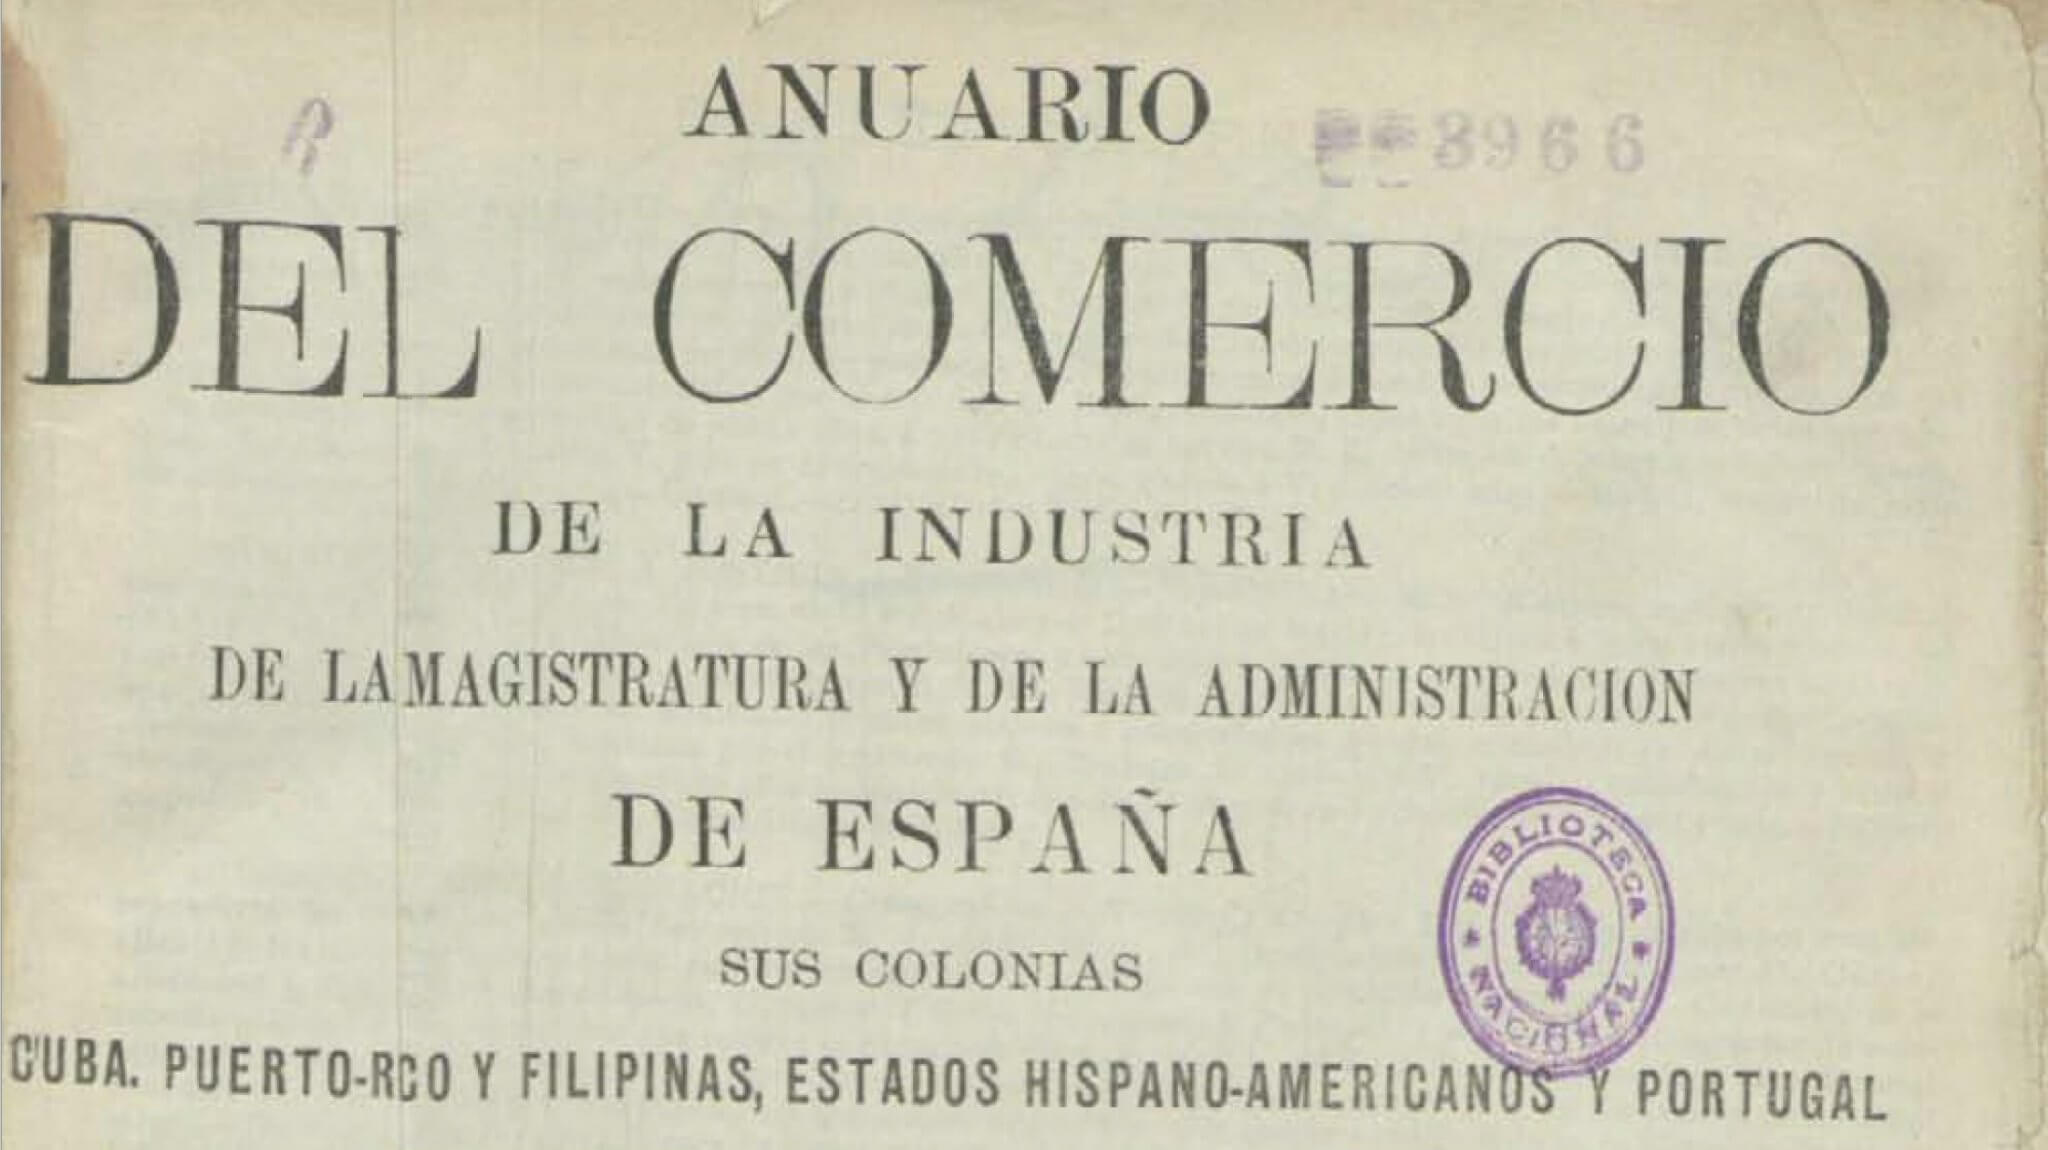 anunario comercio 1911